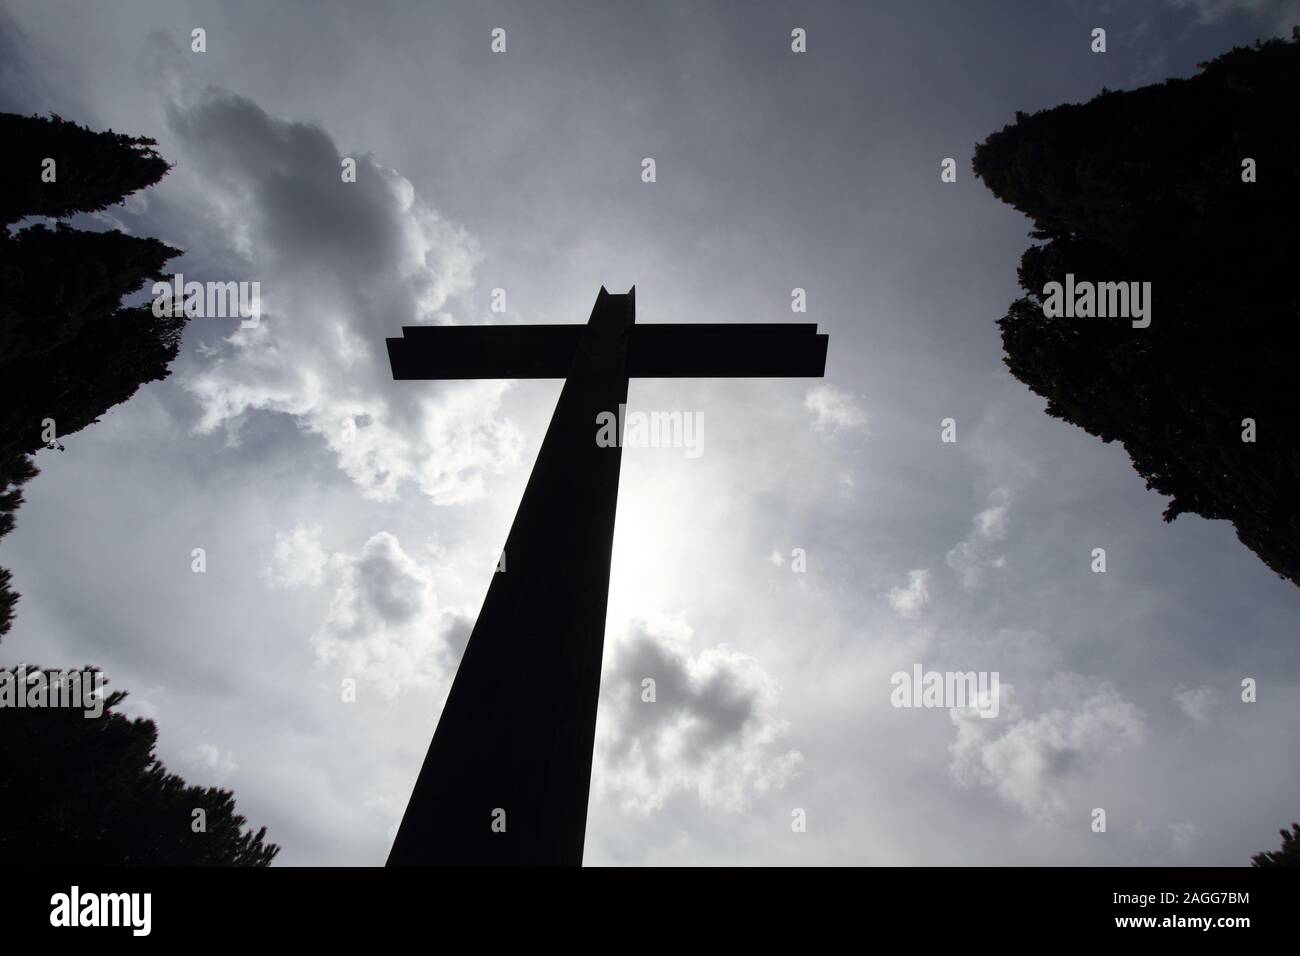 Fotografía conceptual de la muerte - silueta de una gran cruz con el cielo de fondo y los típicos setos del cementerio Foto de stock